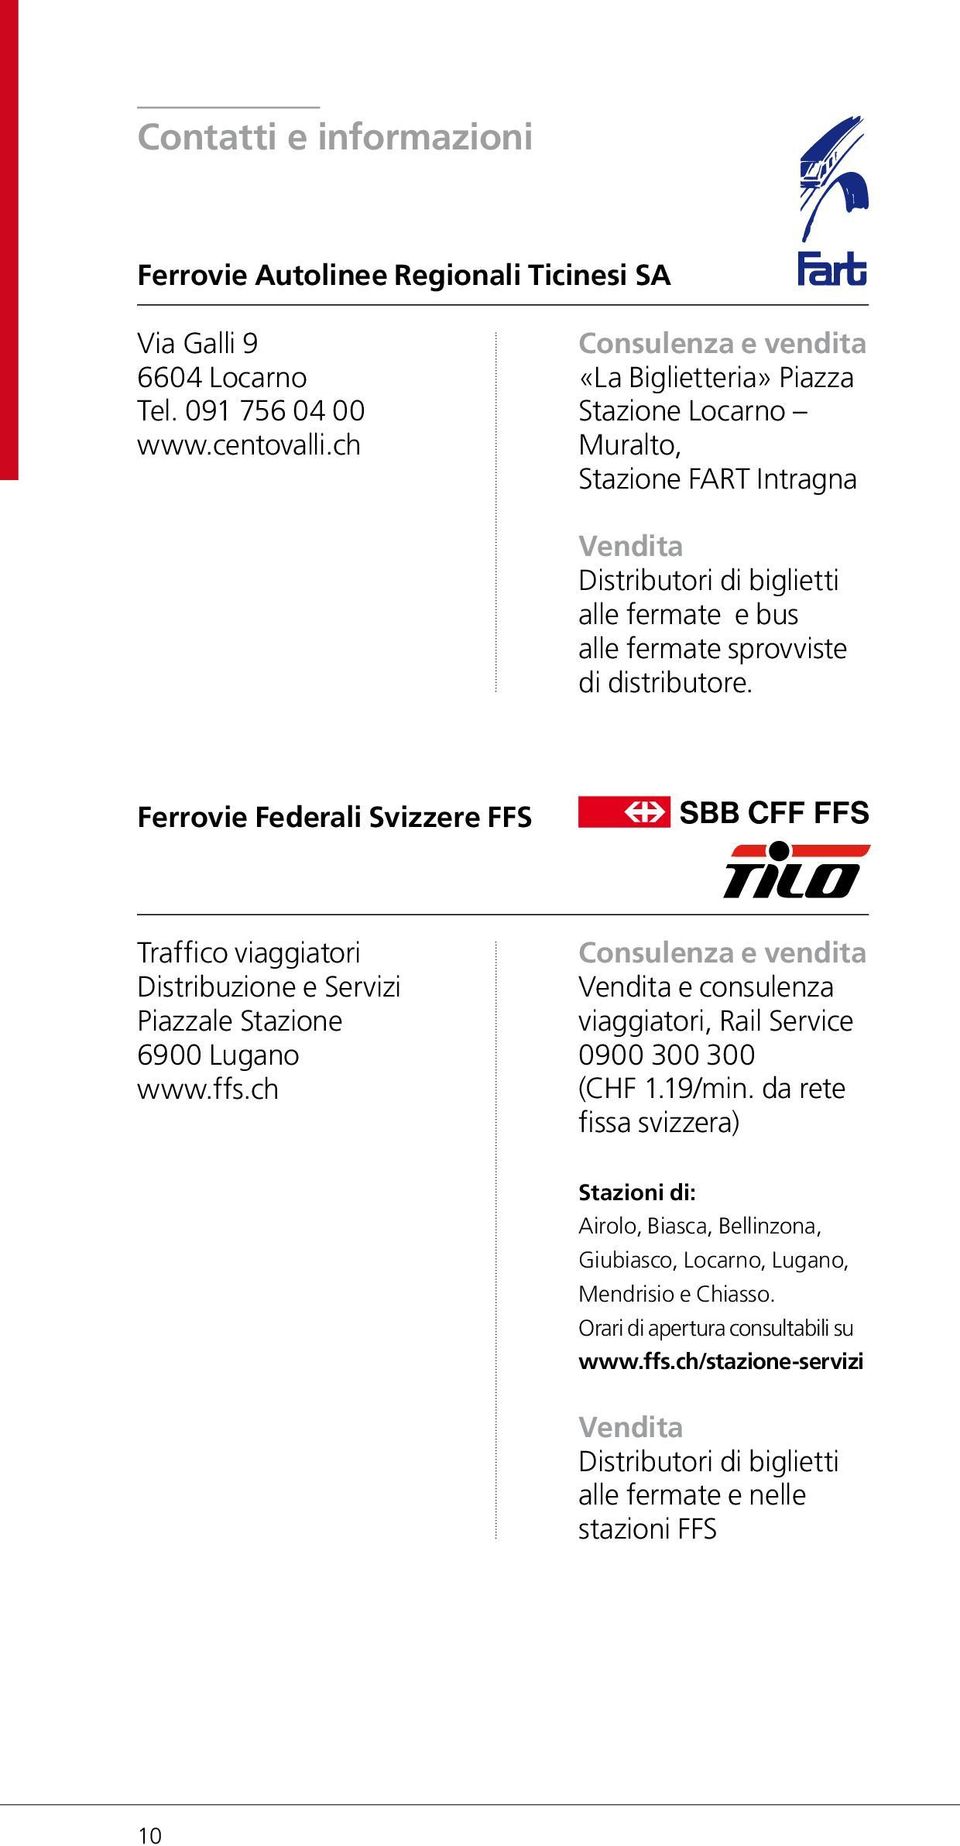 Ferrovie Federali Svizzere FFS Traffico viaggiatori Distribuzione e Servizi Piazzale Stazione 6900 Lugano www.ffs.